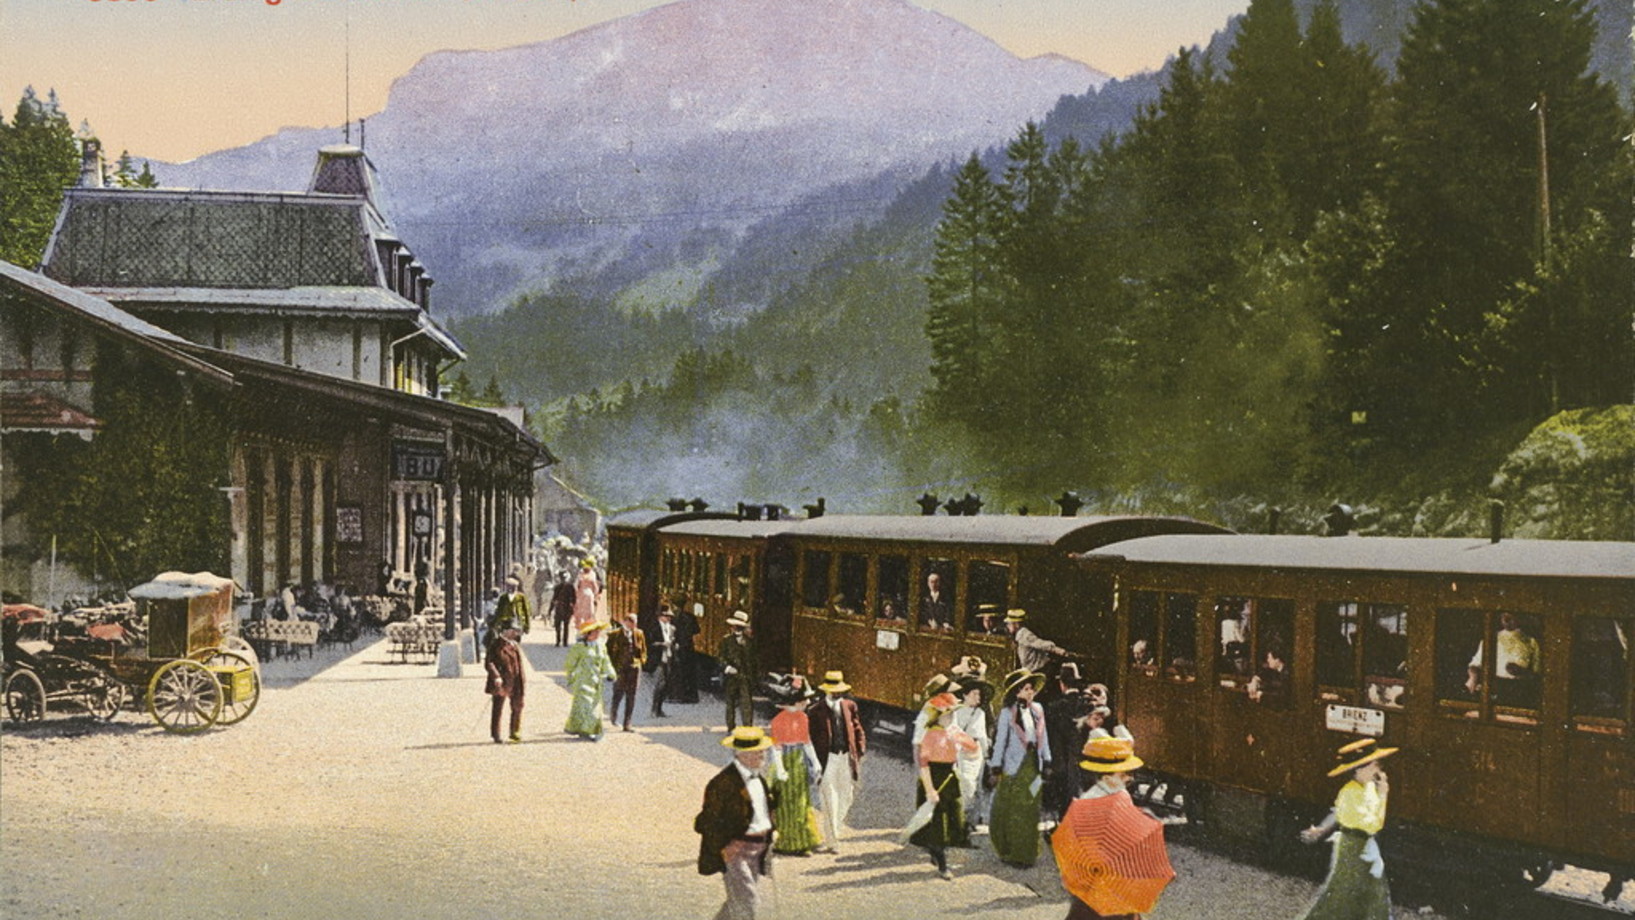 Am 14. Juni 1888 - also vor 125 Jahren - wurde die Brünig-Schmalspurbahn eingeweiht. Das Bild stammt wahrscheinlich aus dem Jahr 1900 und zeigt den Bahnhof von Brünig auf 1004 Metern Höhe. Es handelt sich um ein Photochrom-Bild, also um ein Schwarz-weiss-Foto, das anschliessend in einem komplizierten Prozess koloriert wurde. Die Brünig-Bahn führt von Interlaken über Brienz, Meiringen, den Brünigpass, Giswil, Alpnachstad nach Luzern. Zwischen Meiringen und Giswil ist sie mit einer Zahnstange ausgestattet. (…